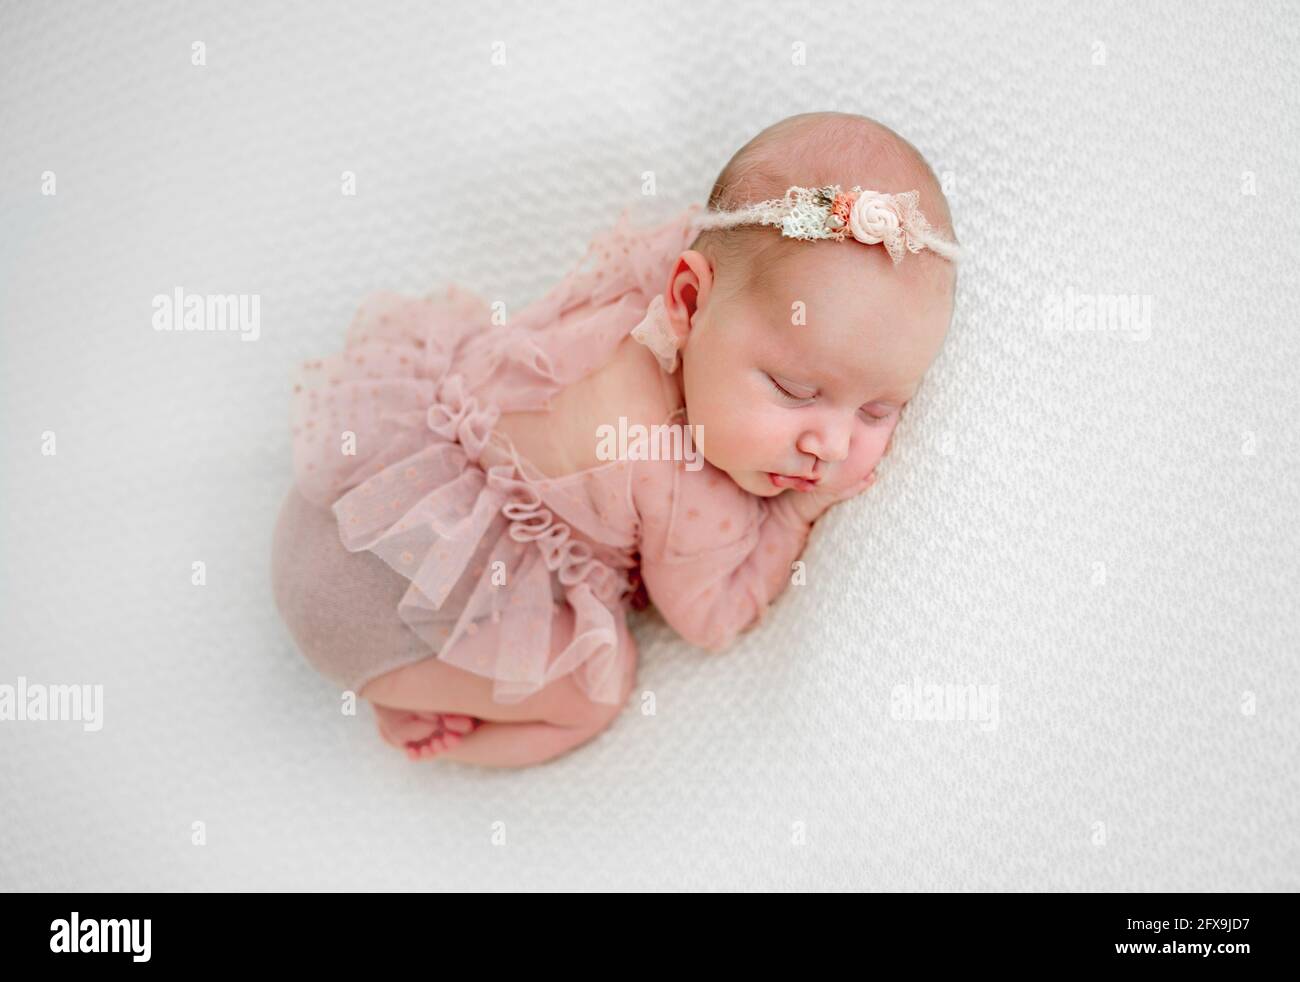 Newborn baby girl photoshoot Stock Photo